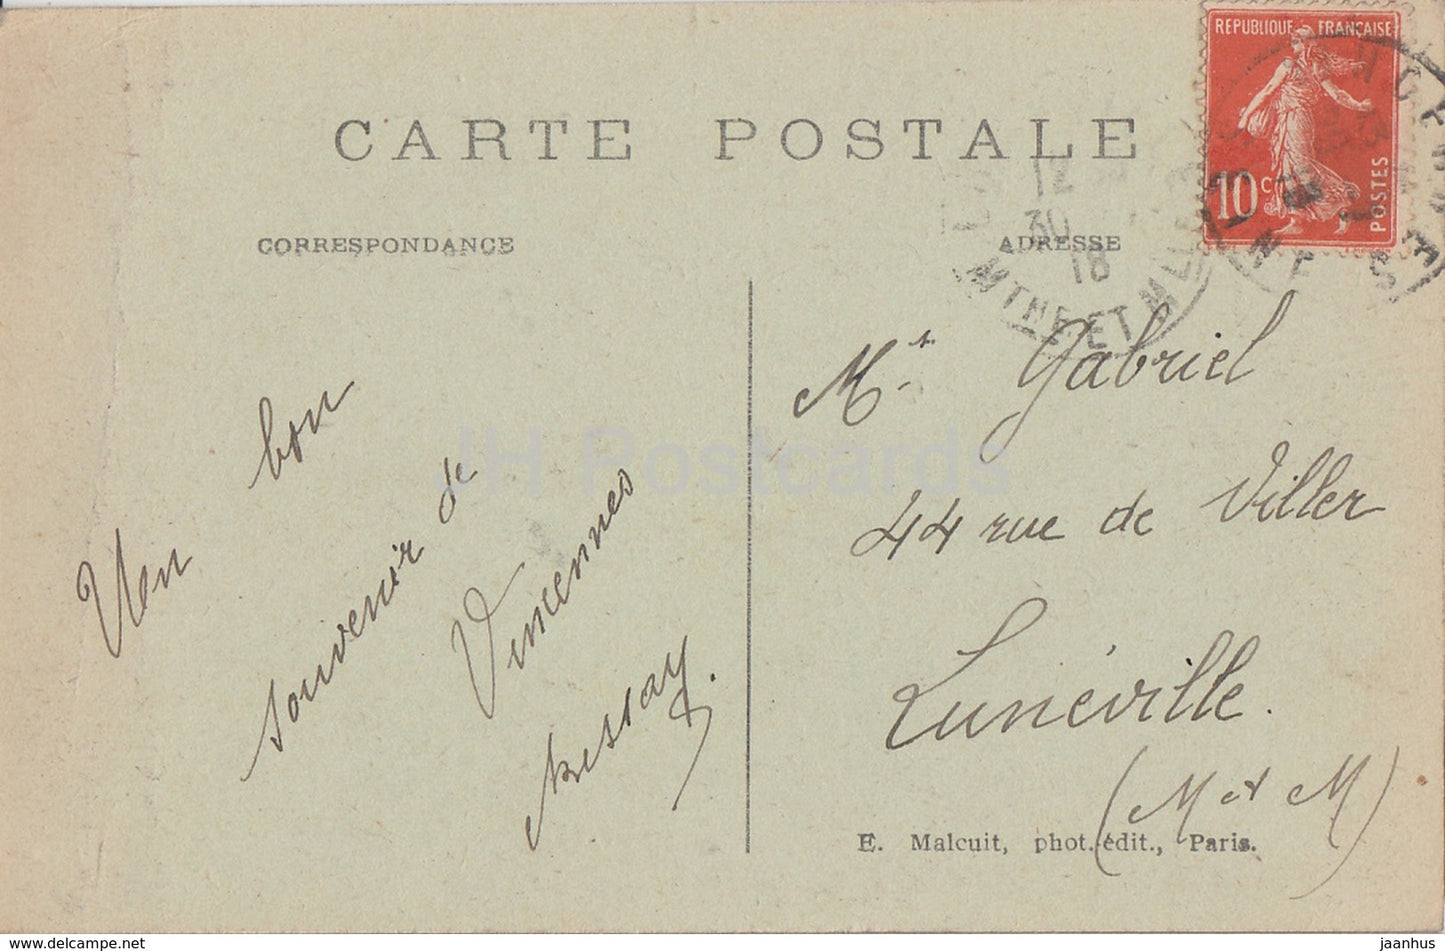 Vincennes - Le Donjon et les Fosses du Chateau - Schloss - 288 - alte Postkarte - 1918 - Frankreich - gebraucht